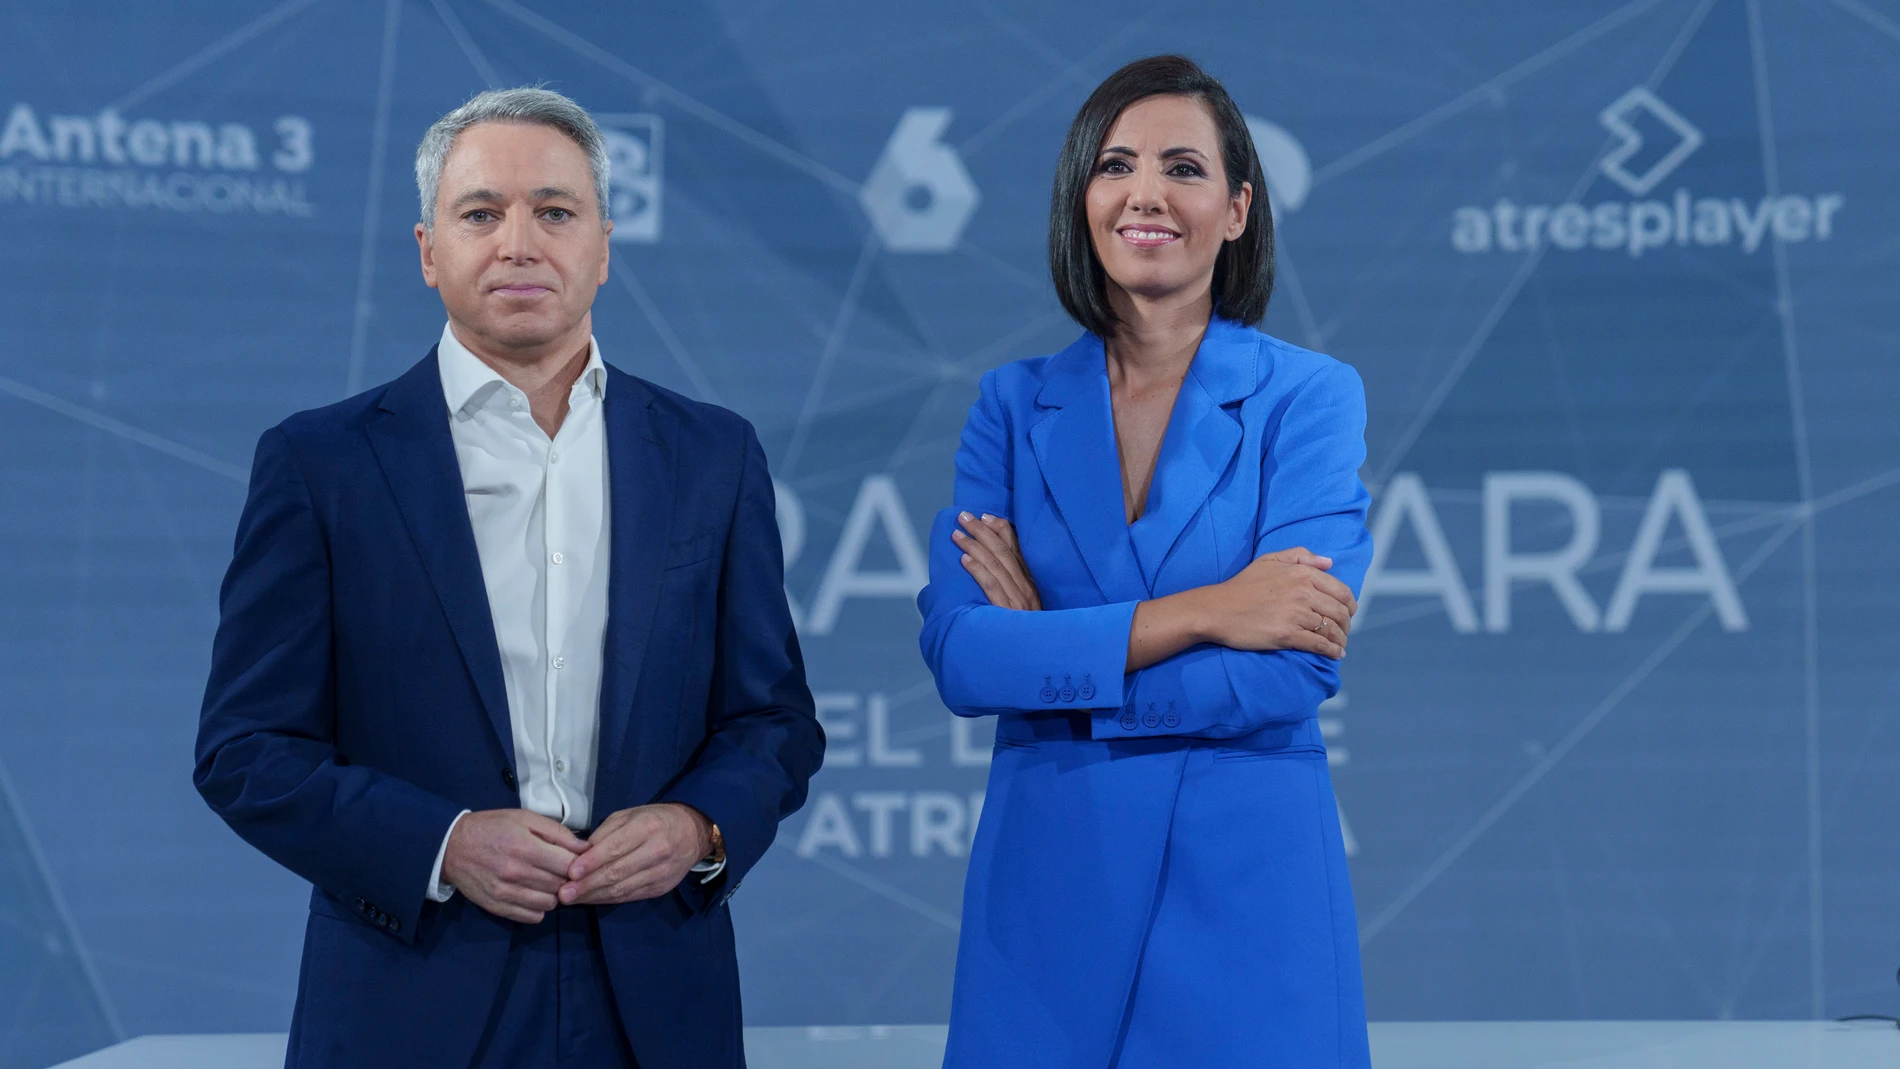 Rueda de prensa del Debate Cara a Cara presentado por Ana Pastor y Vicente Valles